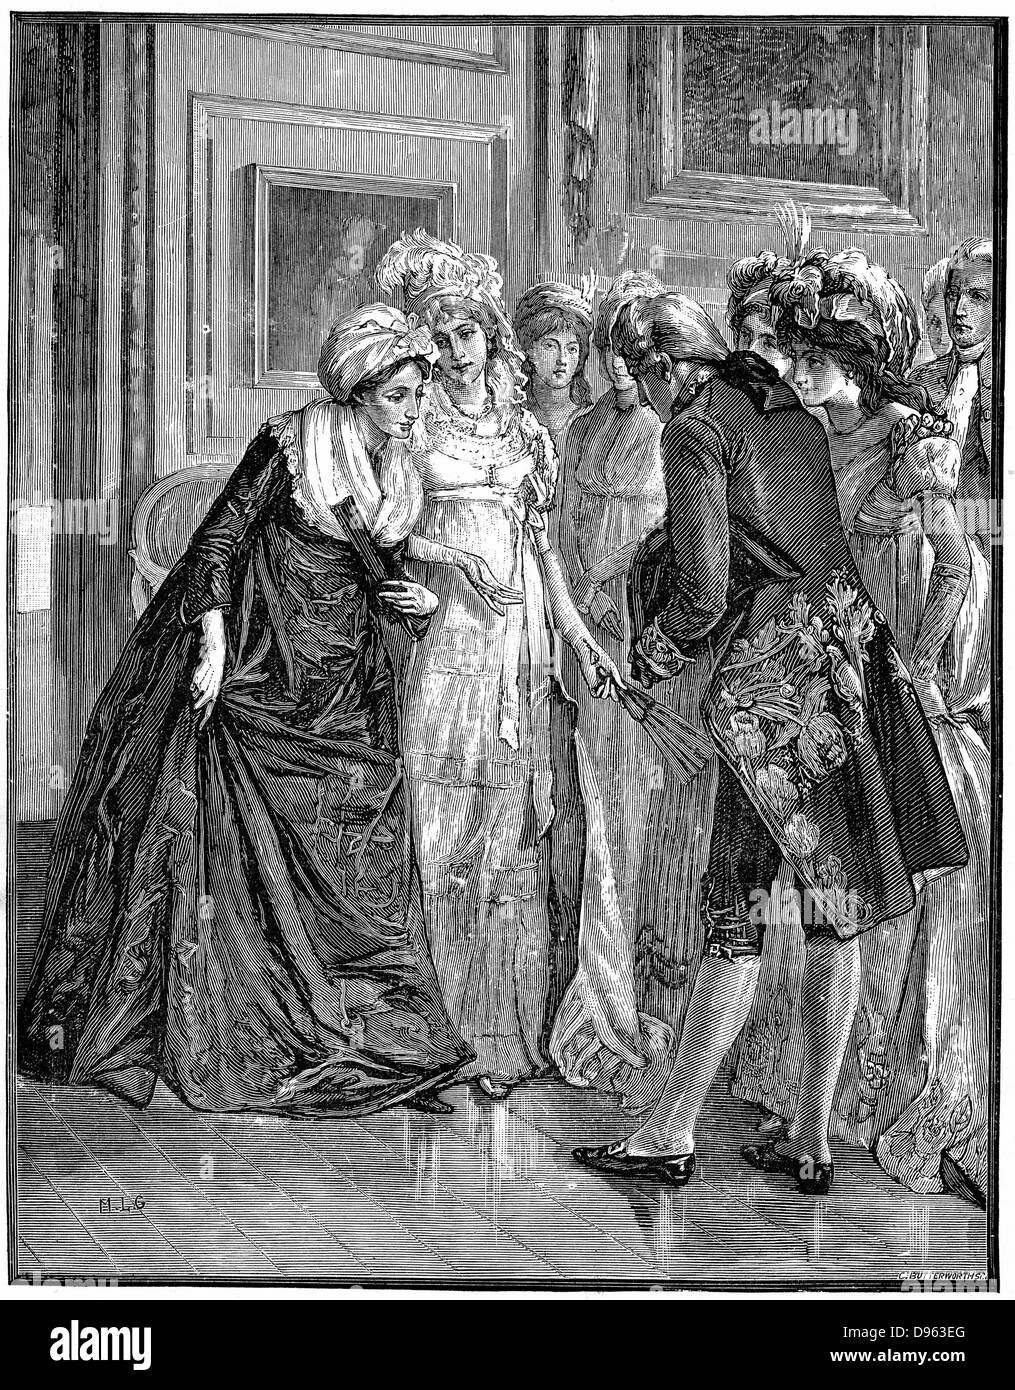 Hannah más (1745-1833), religioso inglés, escritor y dramaturgo y miembro de Blue Stocking, círculo de mujeres educadas inteligente, siendo introducido a la sociedad por la duquesa de Gloucester. El grabado en madera. Foto de stock